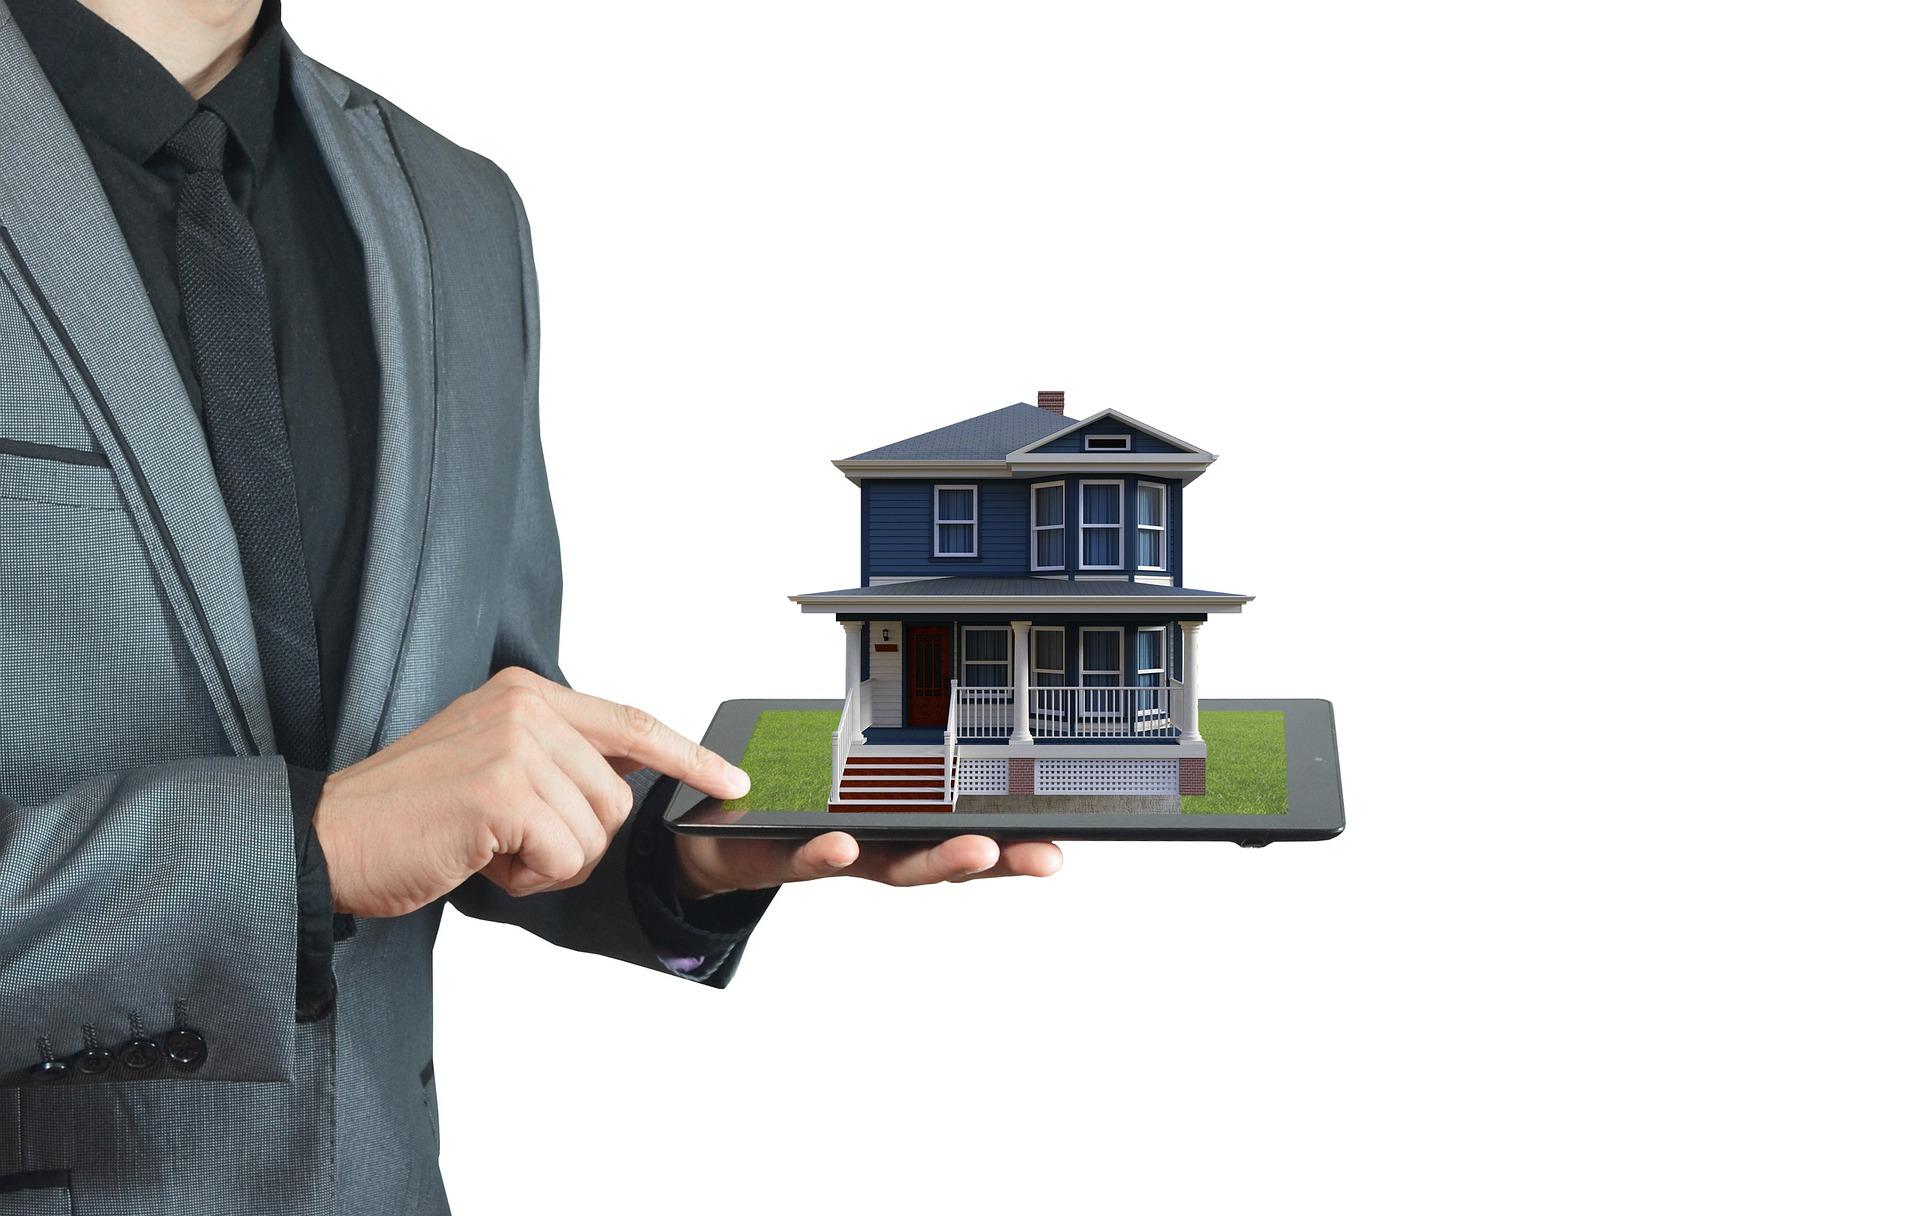 Edify permite comprar o reformar una casa con uso de Realidad Aumentada o Big Data